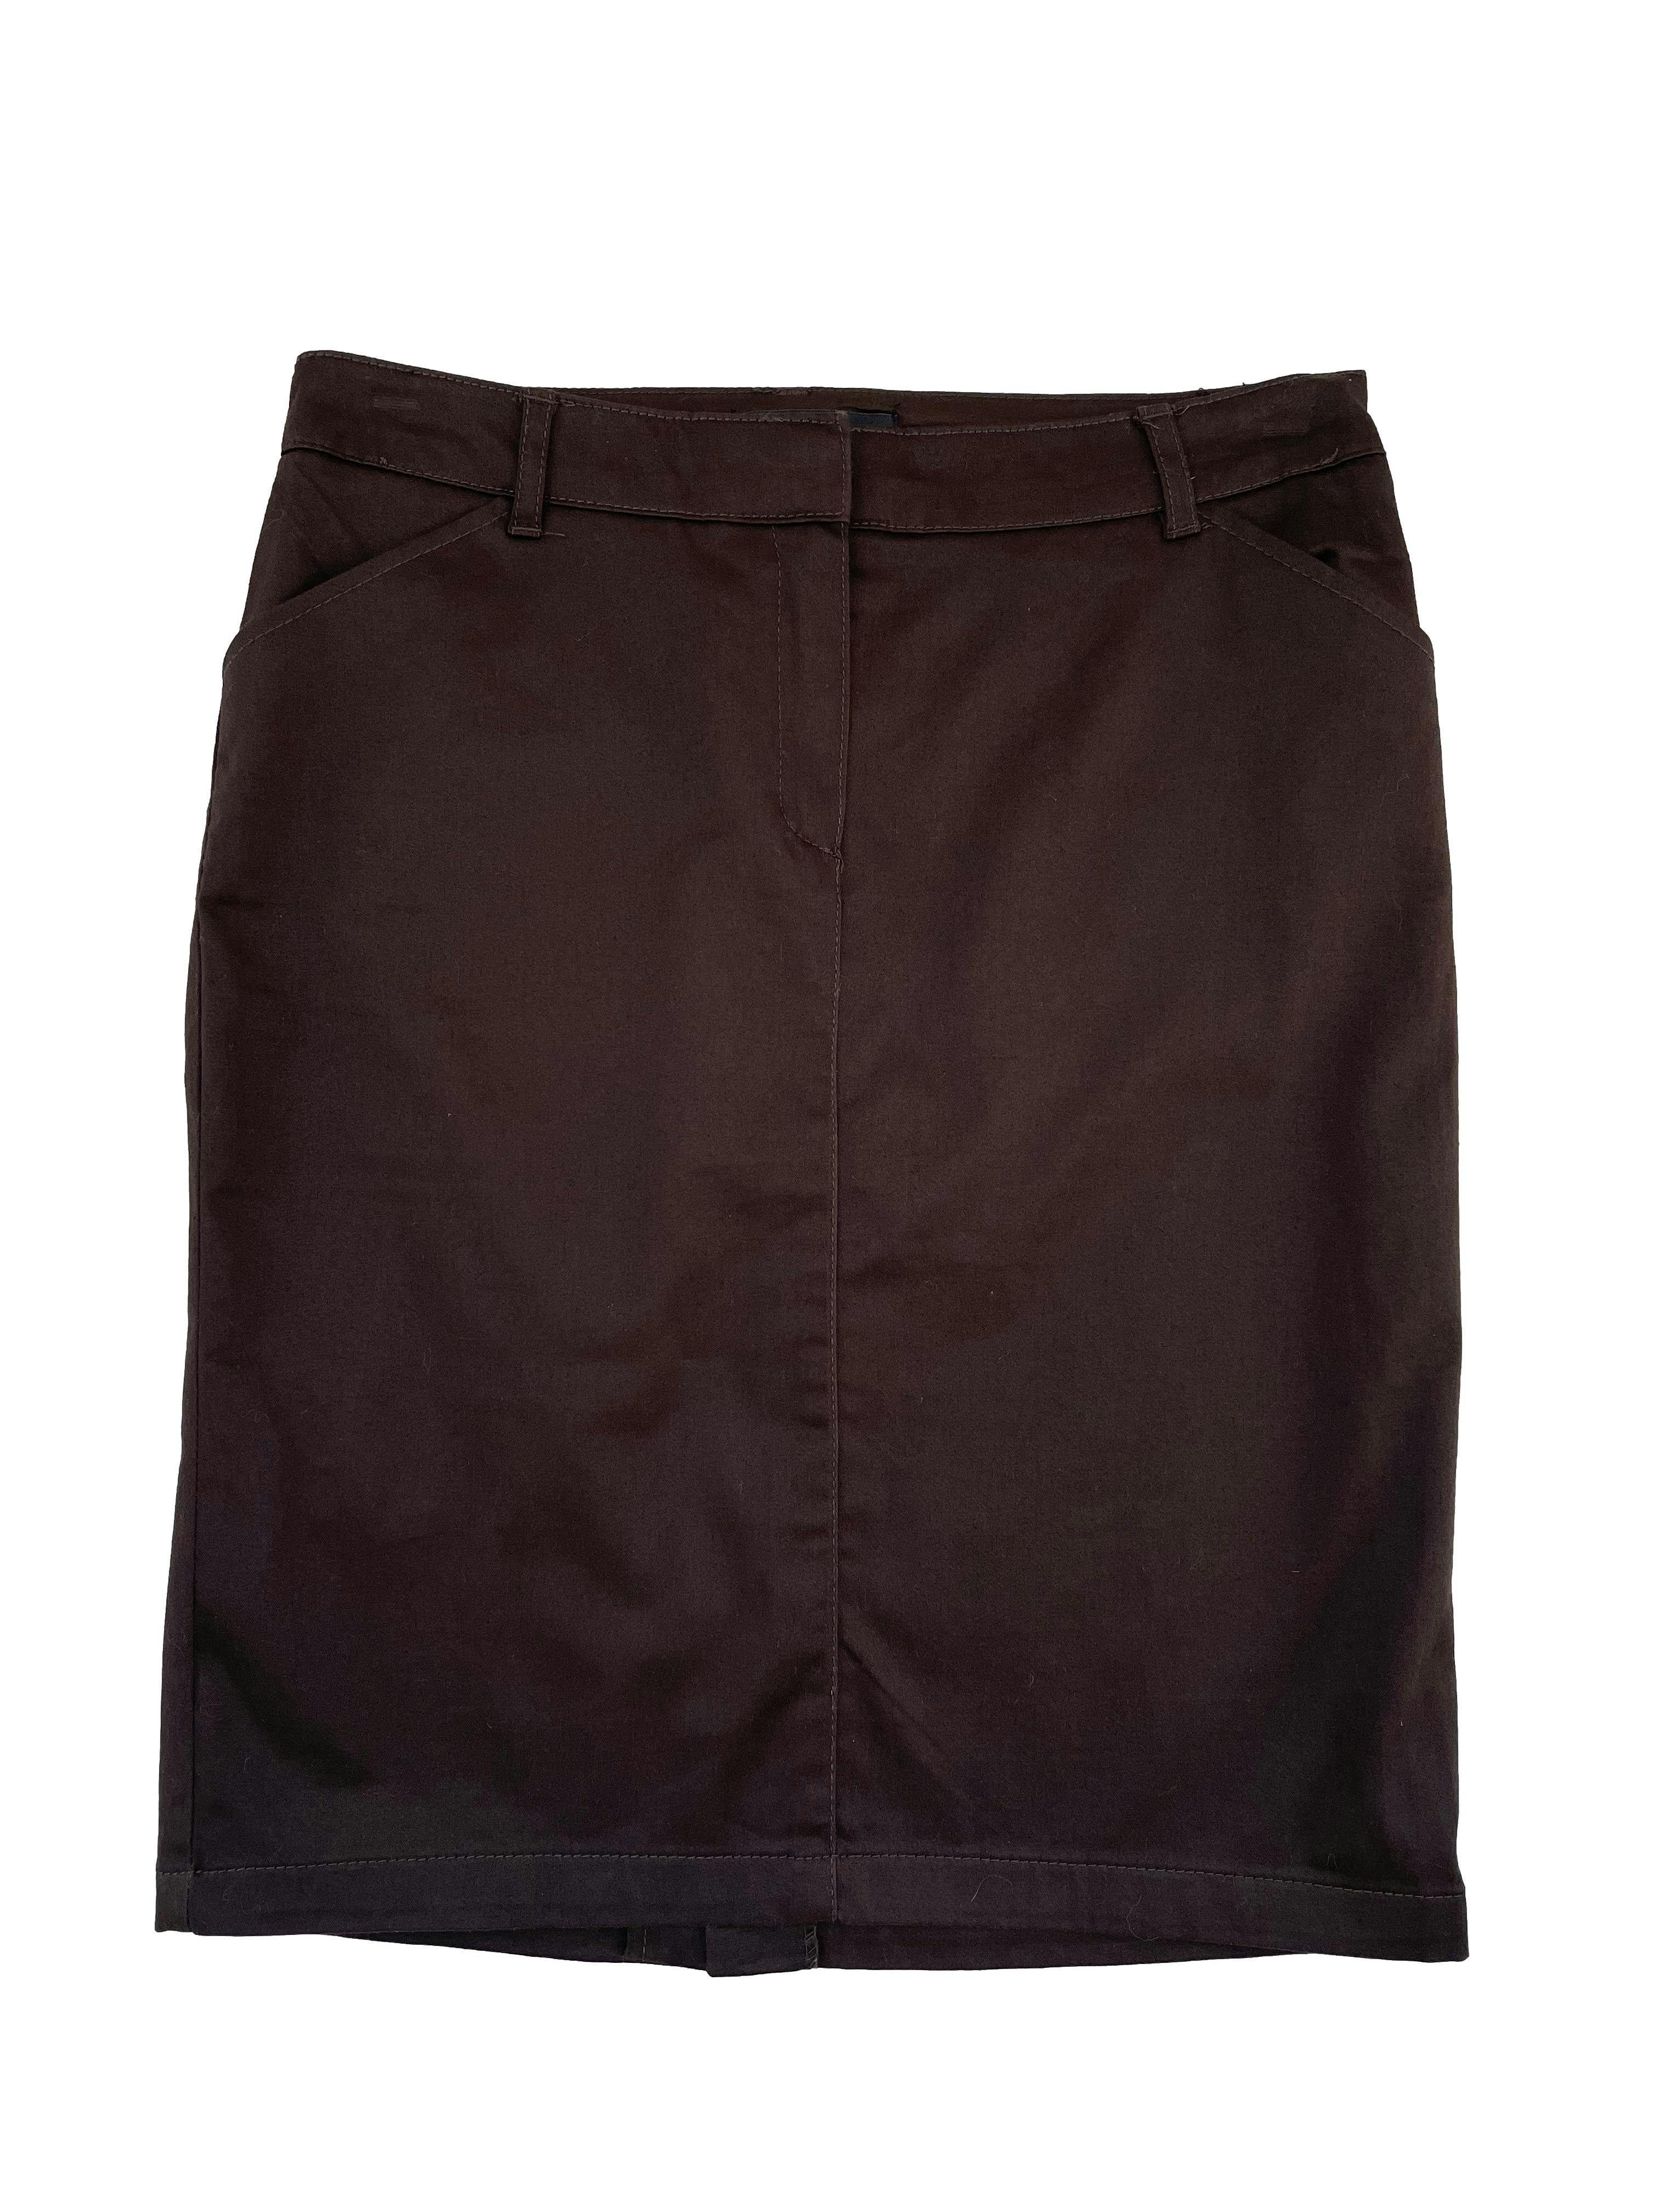 Falda Mango color marrón , tela plana 97% algodón, bolsillos delanteros y falsos bolsillos en espalda, abertura posterior en la basta. Cintura 70 cm, Largo 51cm.